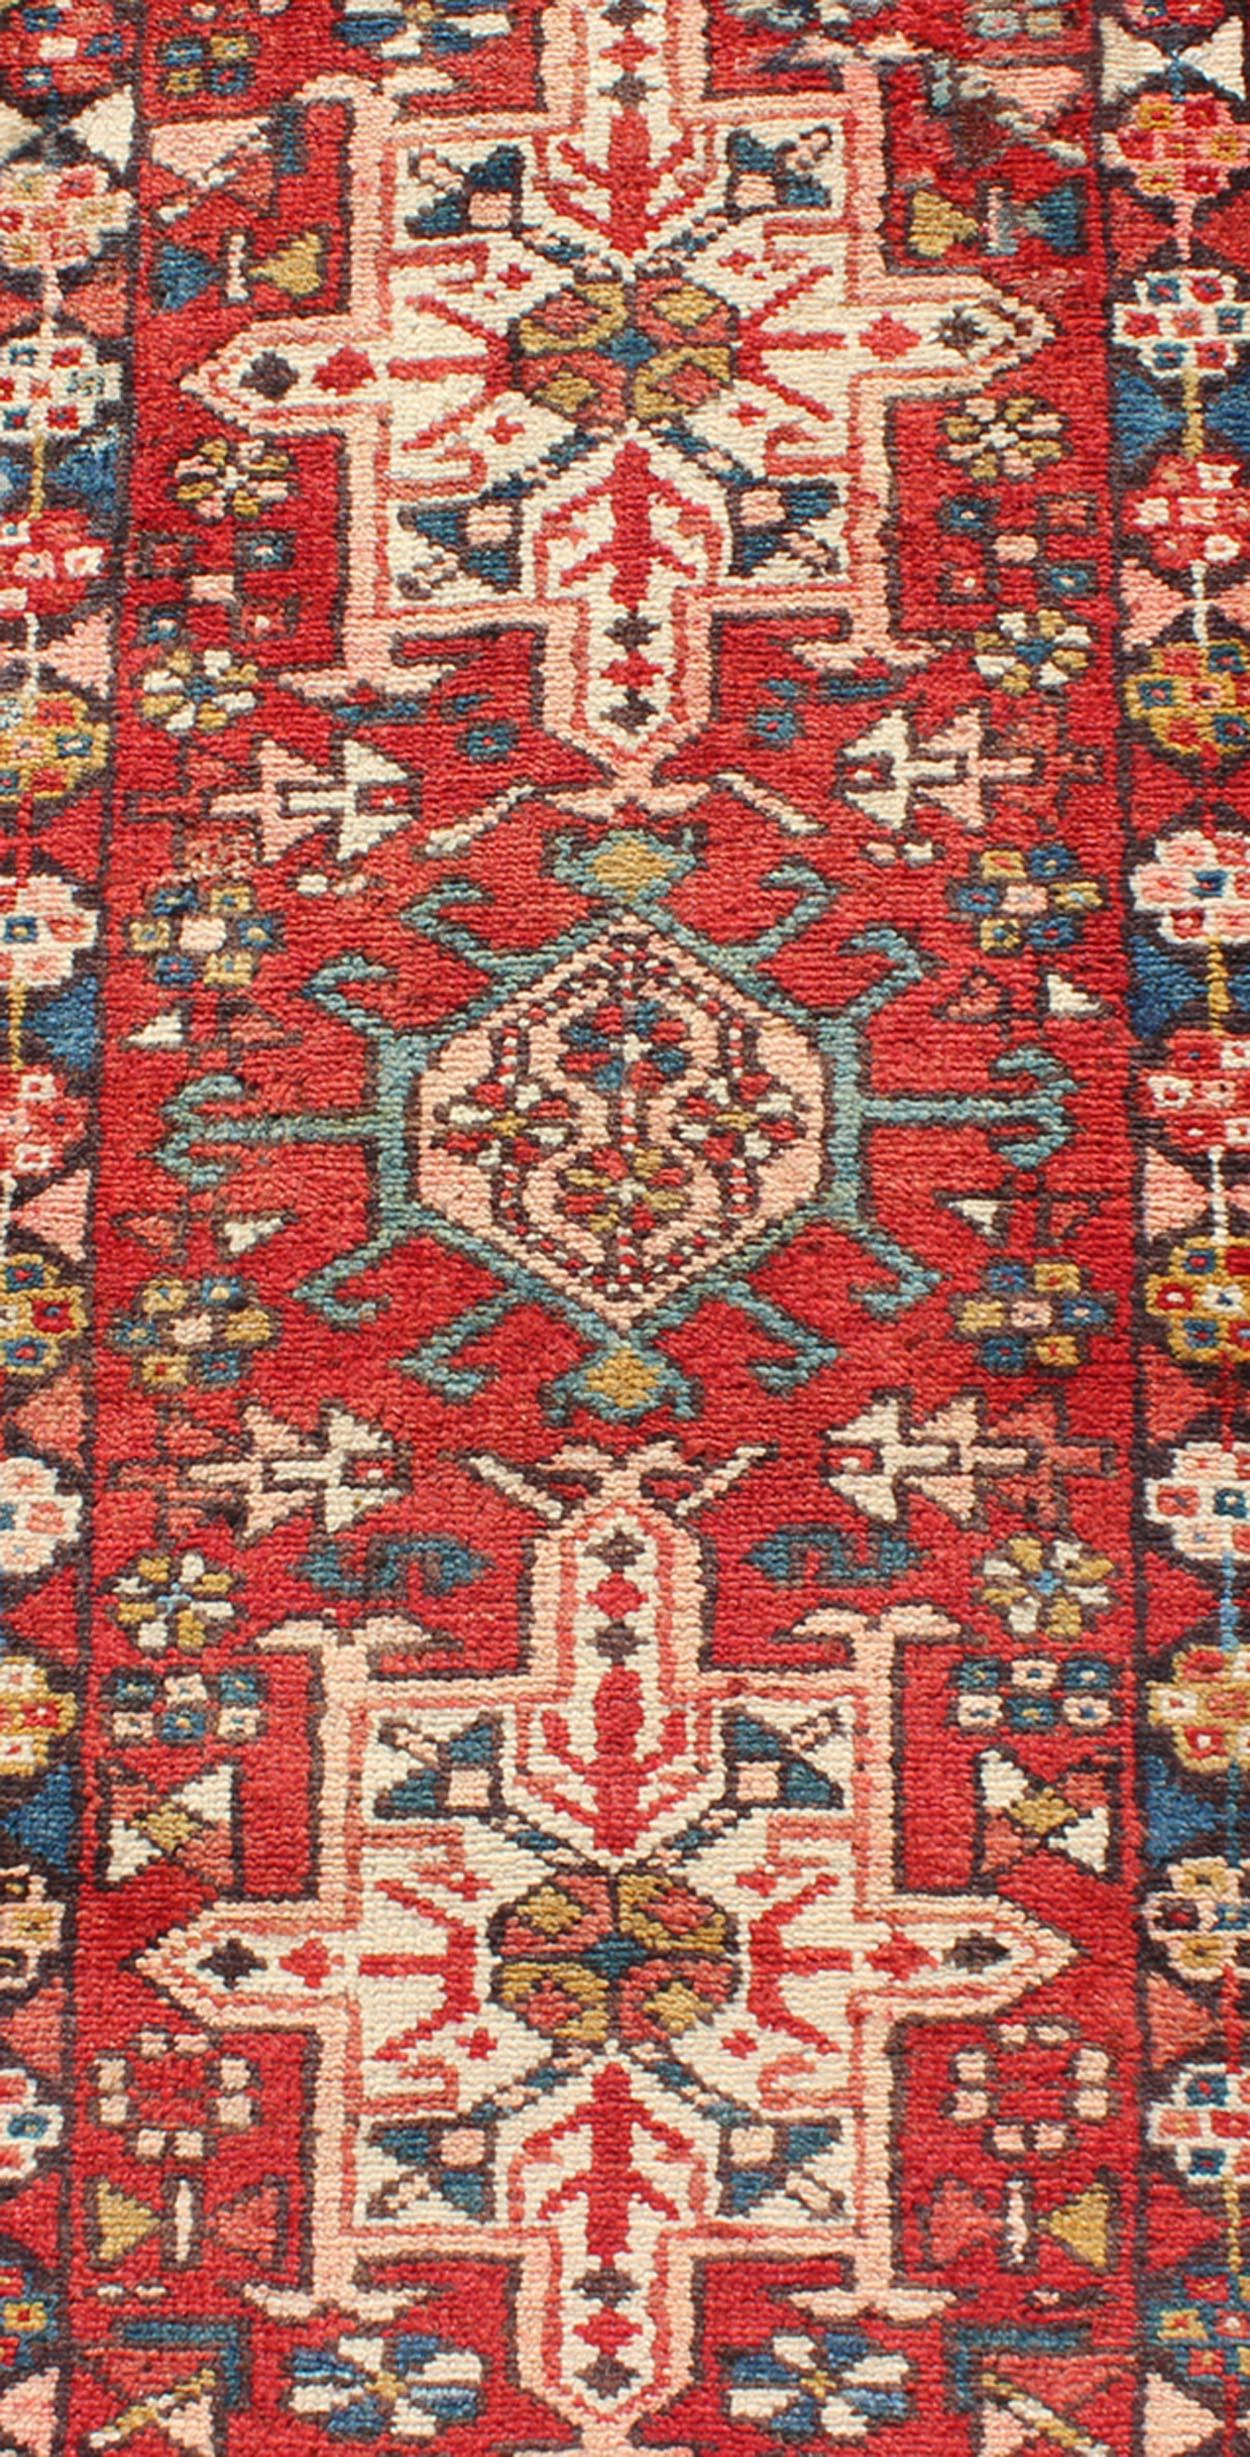 Ce tapis de course semi-ancien Karadjeh, tissé à la main au milieu du 20e siècle, présente un champ de couleur rouge imprégné de médaillons ornés. Une bordure à plusieurs niveaux magnifiquement dessinée entoure la totalité de la pièce.